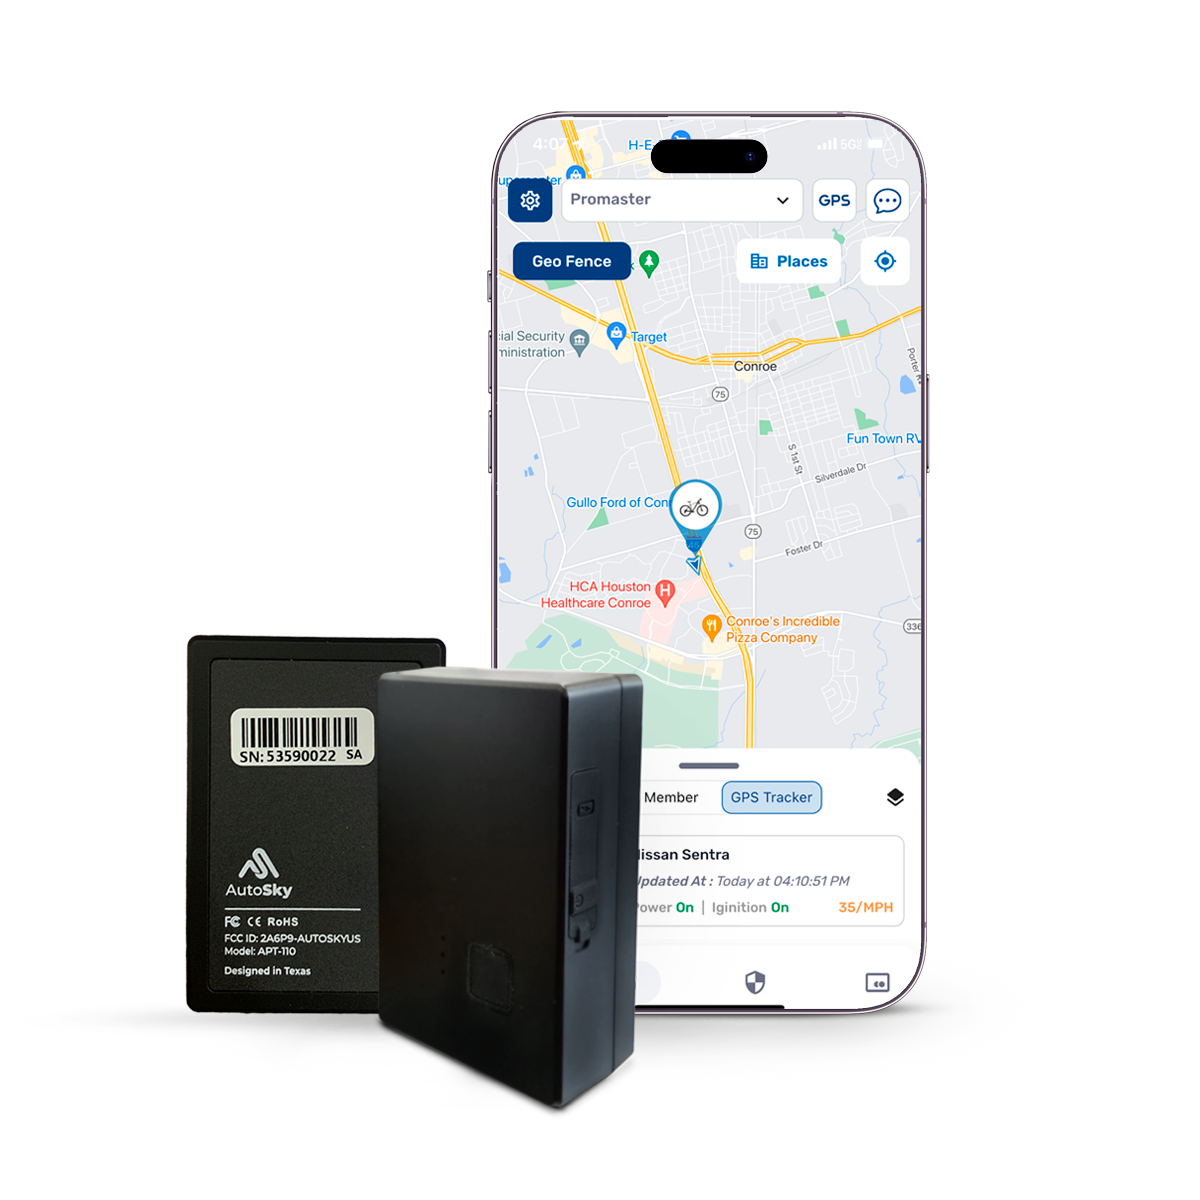 Rastreador GPS portátil AutoSky - Modelo: APT-110 - Tamaño mediano